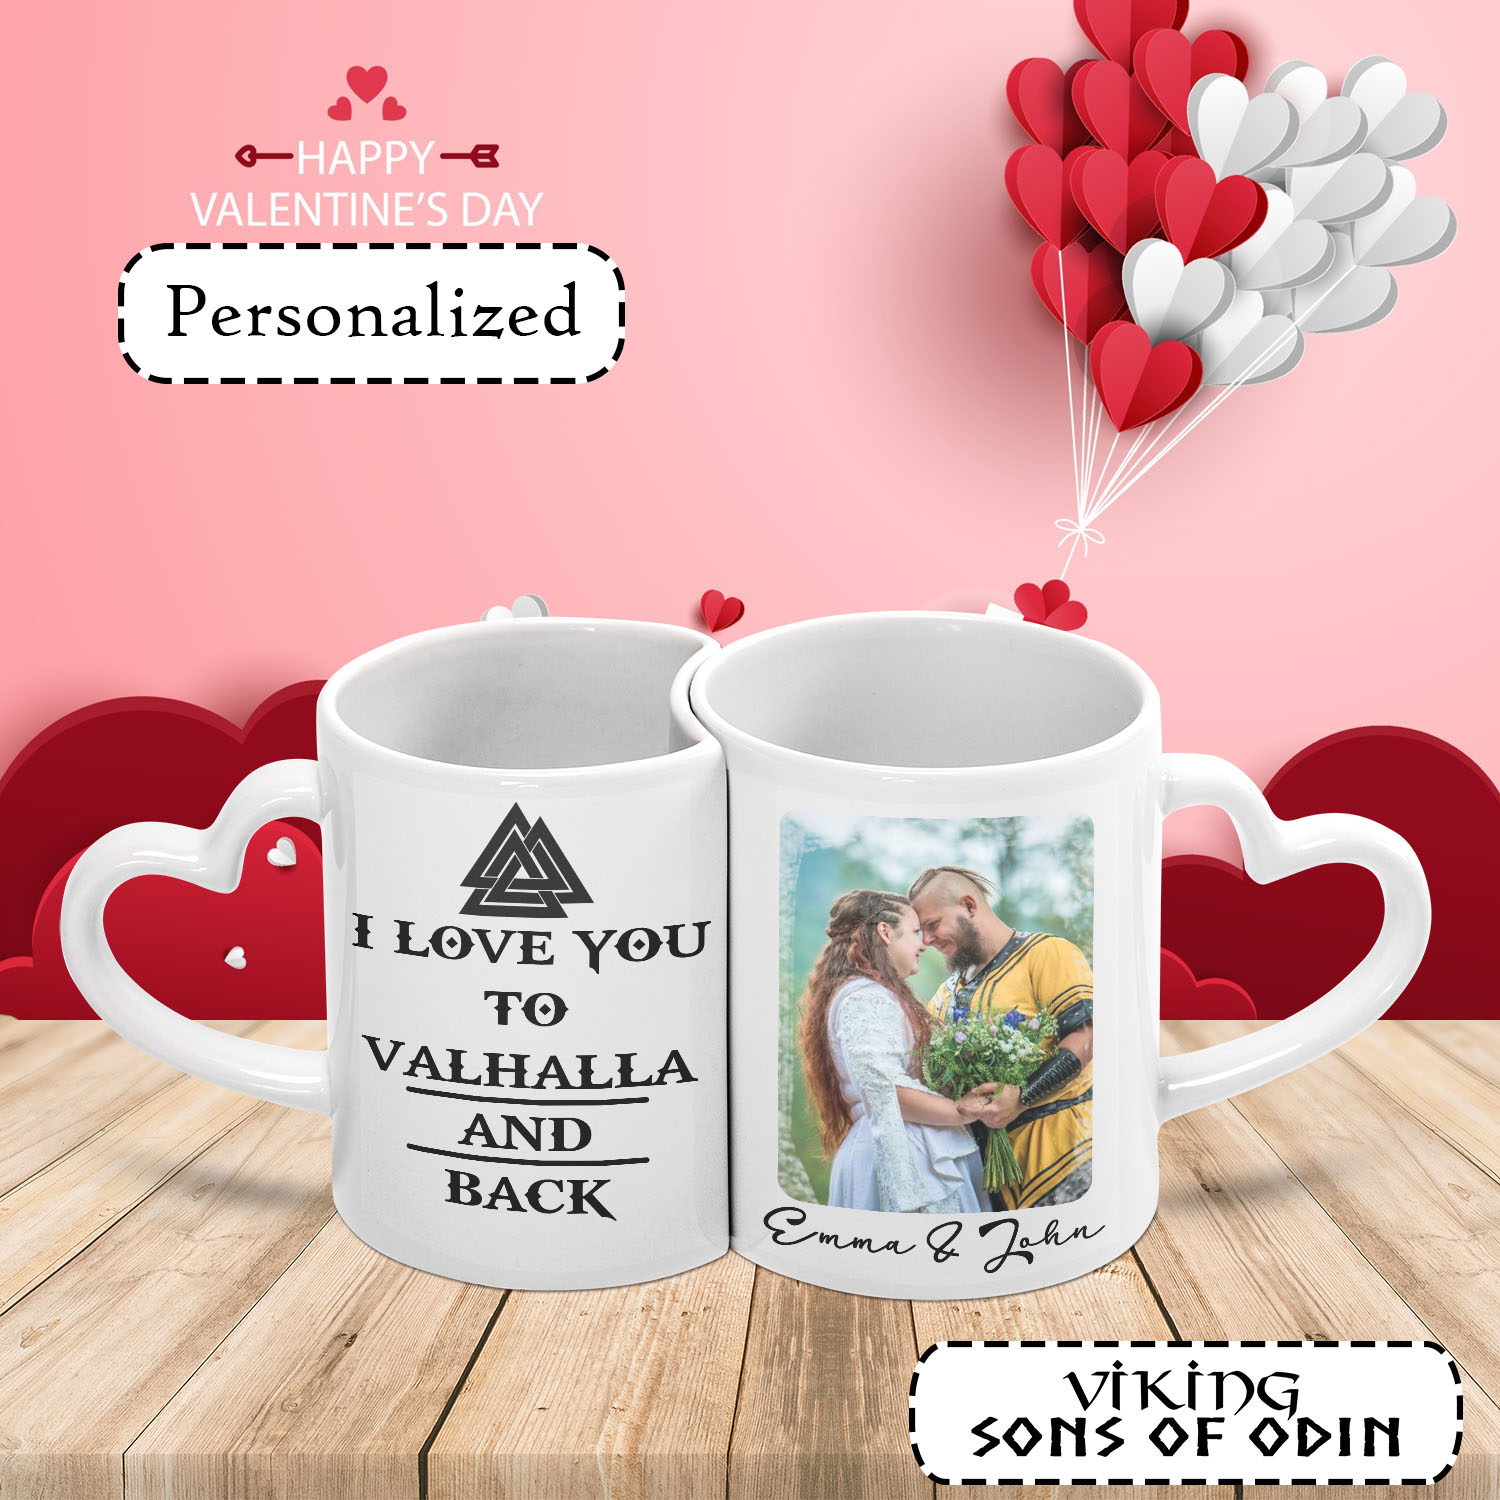 https://vikingsonsofodin.com/wp-content/uploads/2022/12/Viking-Mug-Heart-Gifts-For-Valentine-Viking-Valentine-Couple-Matching-Mug-Set-Viking-Mug-I-Love-You-Valhalla-and-Back.jpg